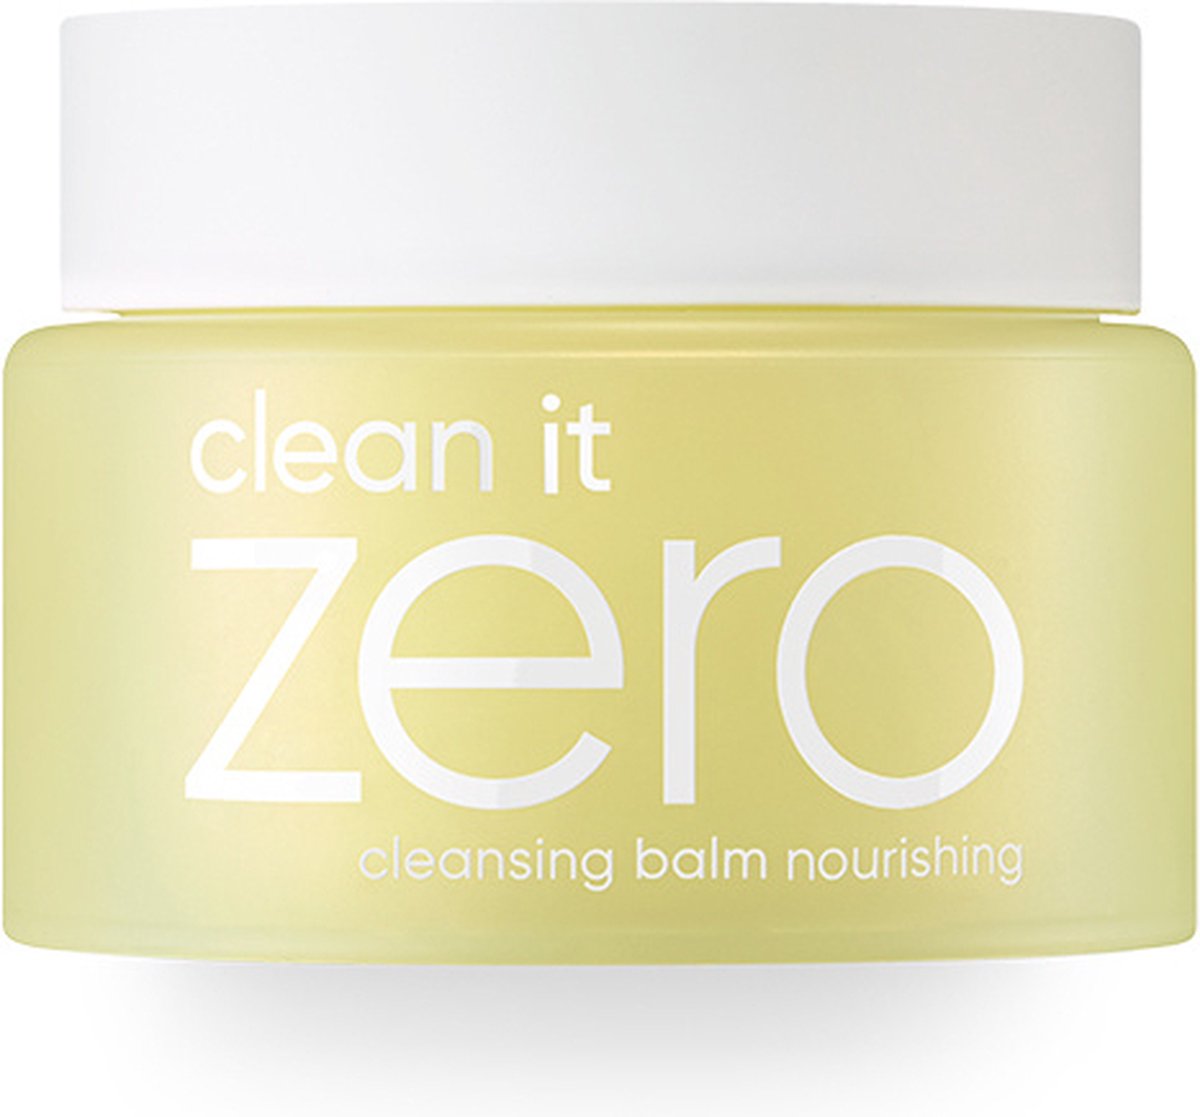 Banila Co - Clean It Zero Cleansing Balm Nourishing - 100 mL